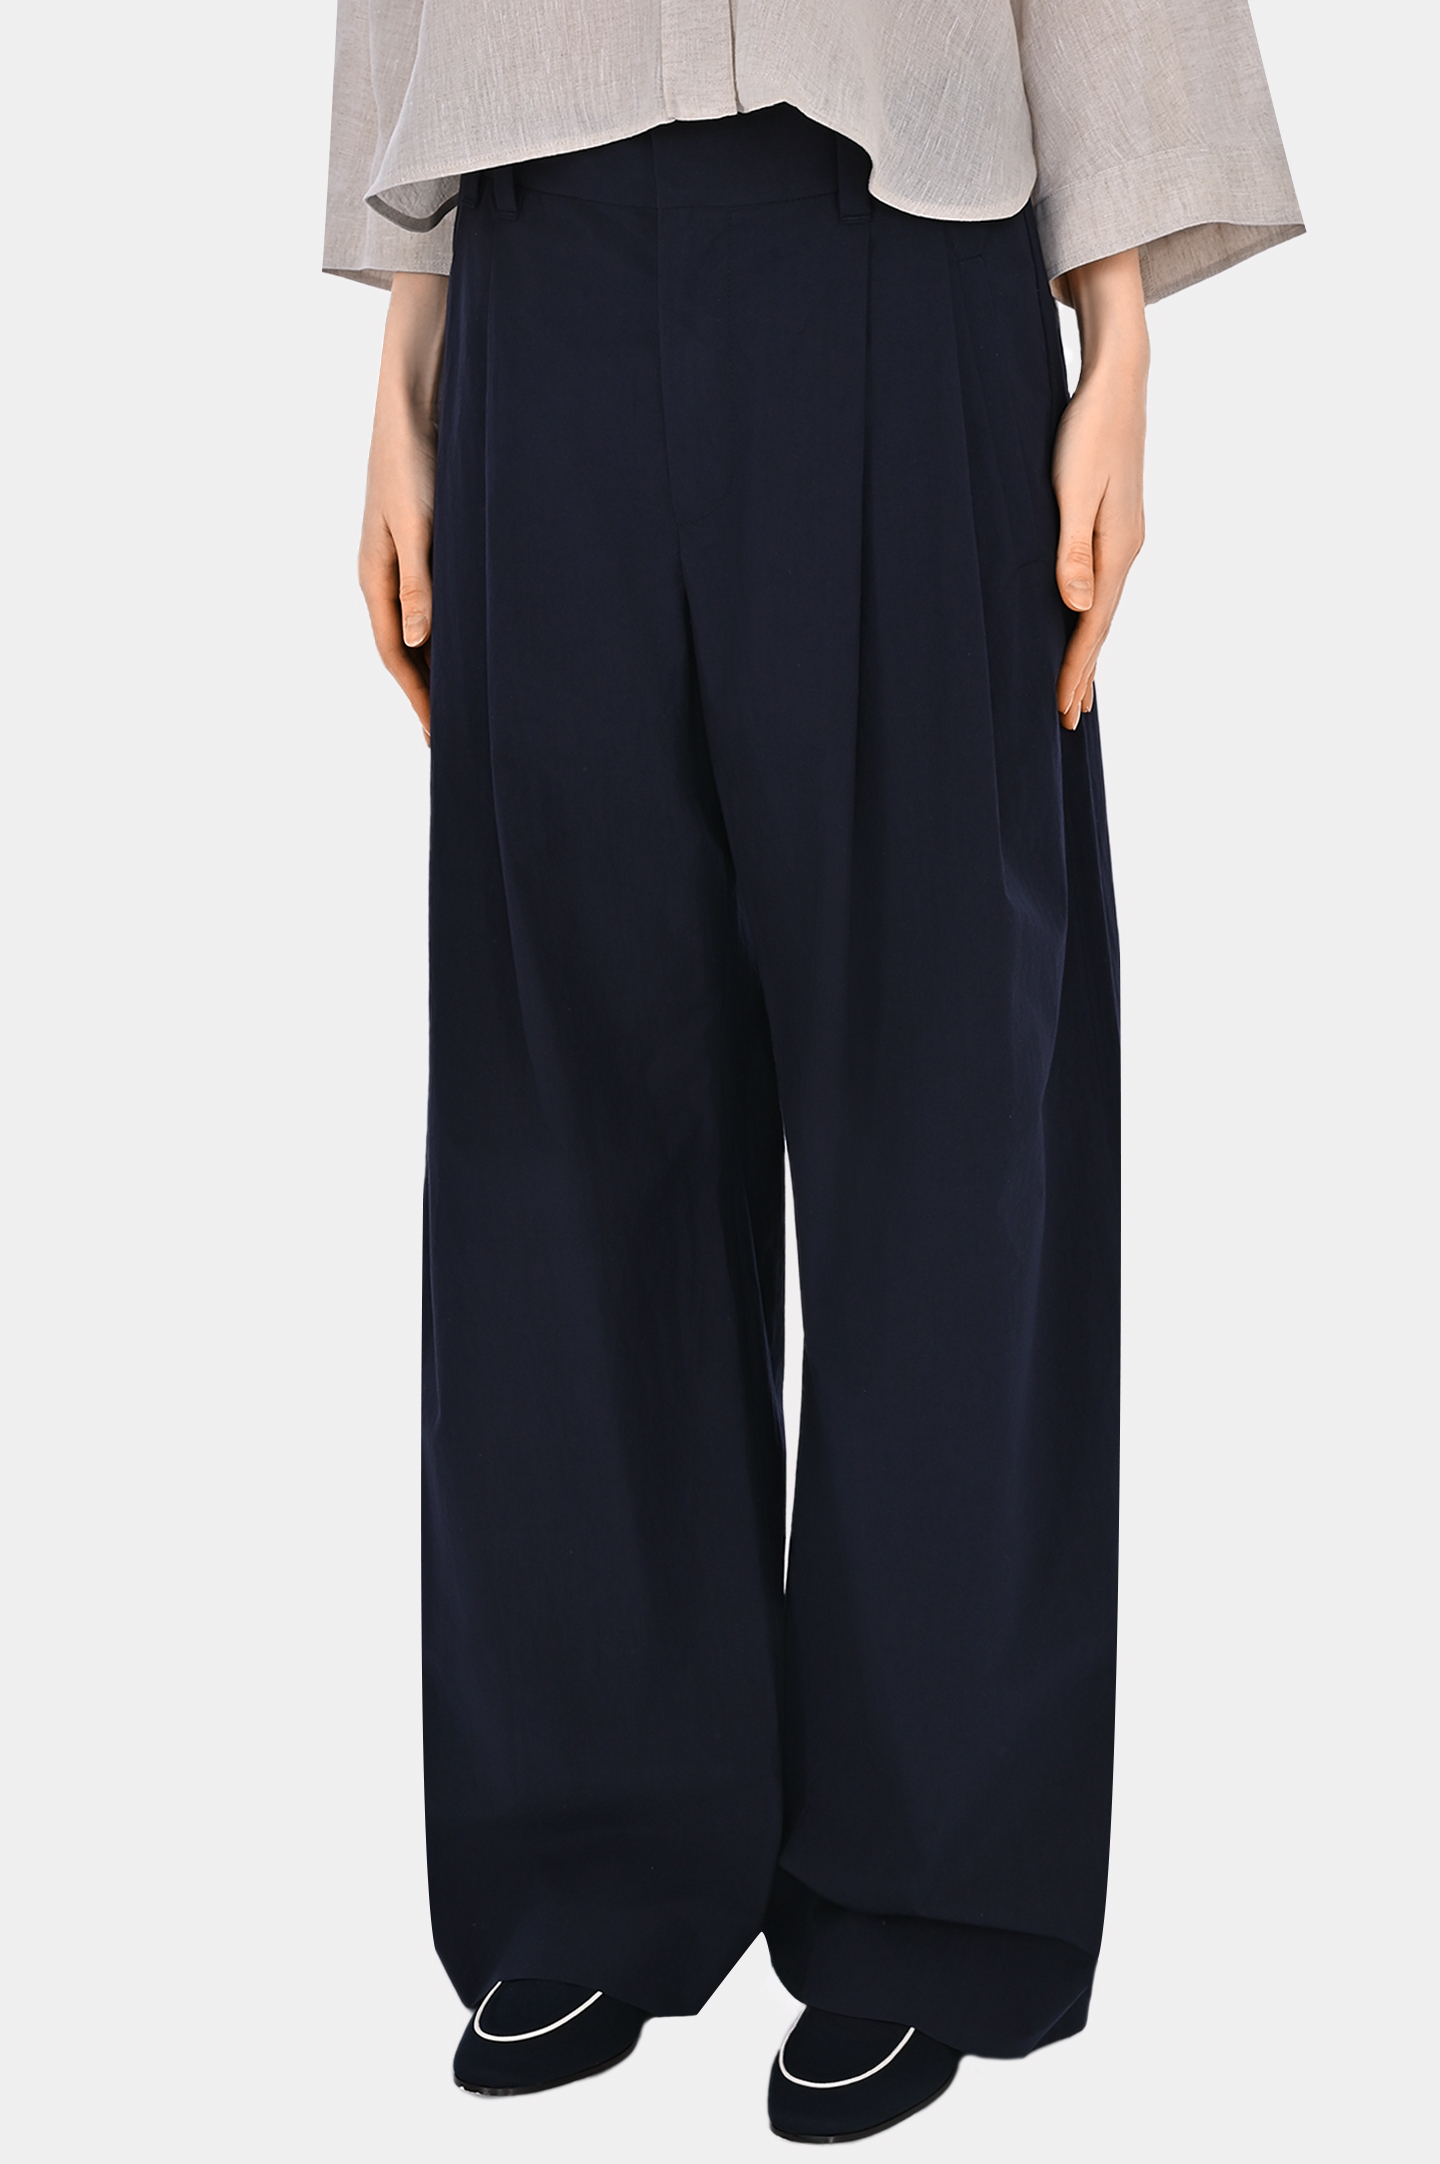 Широкие хлопковые брюки BRUNELLO  CUCINELLI ML949P8509, цвет: Темно-синий, Женский